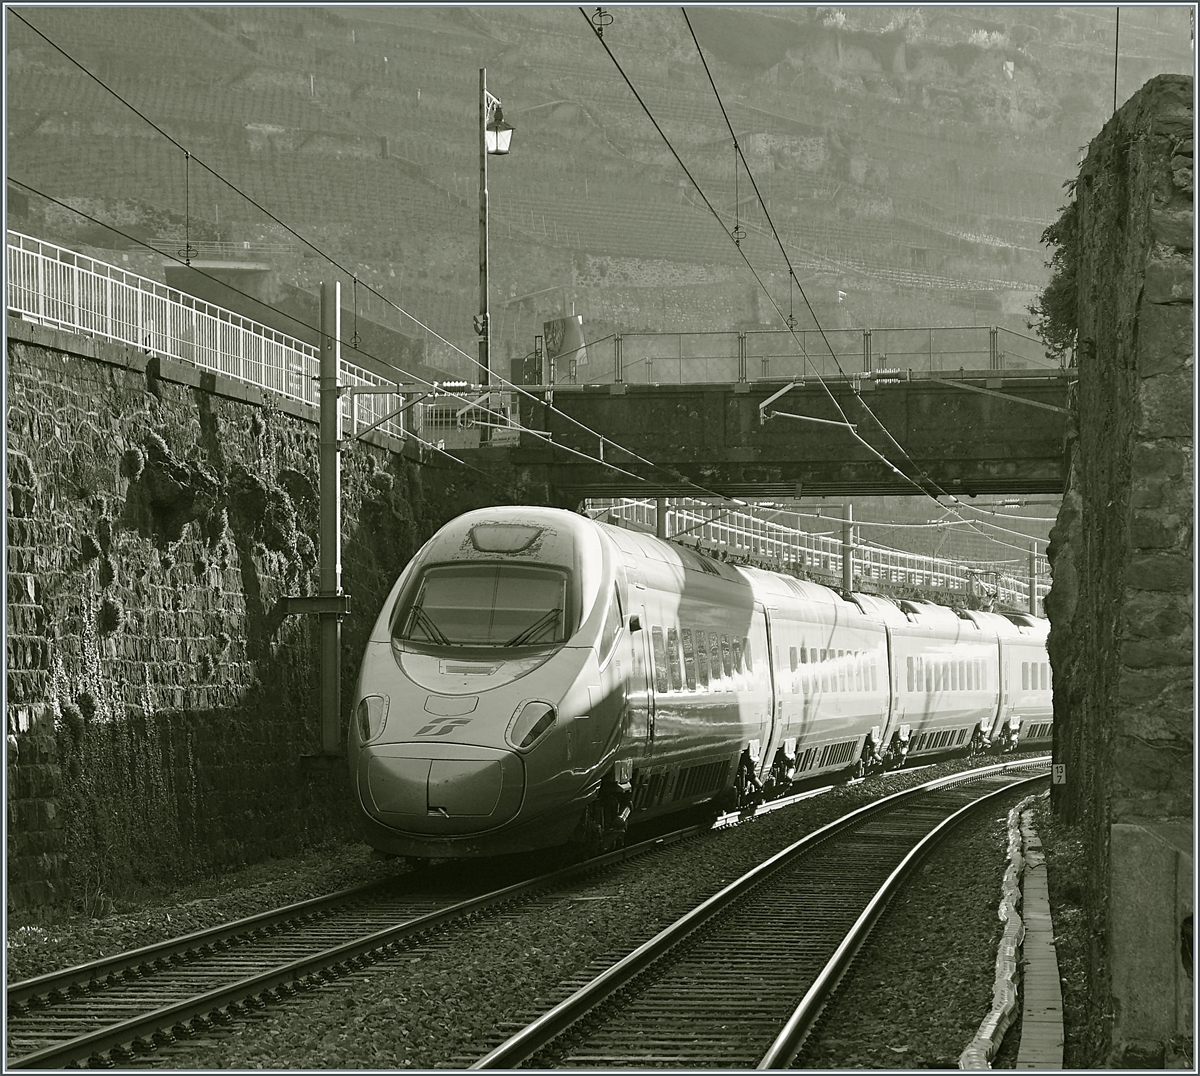 Der FS Trenitalia ETR 610 011 auf dem Weg als EC 37 nach Milano bei der Ausfahrt im Bahnhof von Rivaz. 

3. April 2021